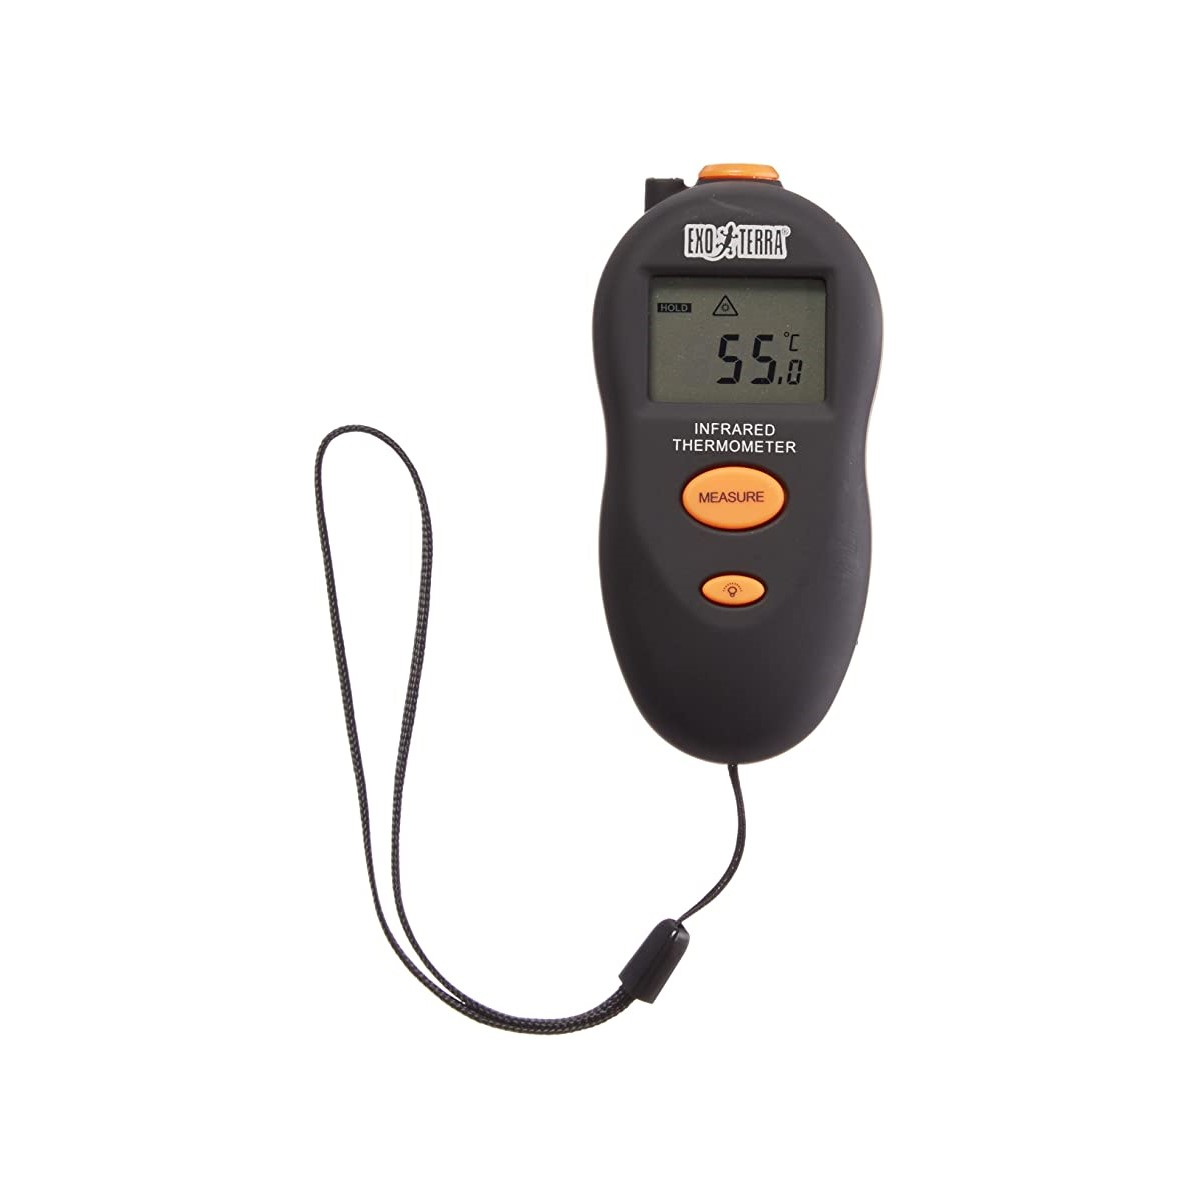 Professionnel Instantanée mesurer la température intérieure Anim Vet Thermomètre 